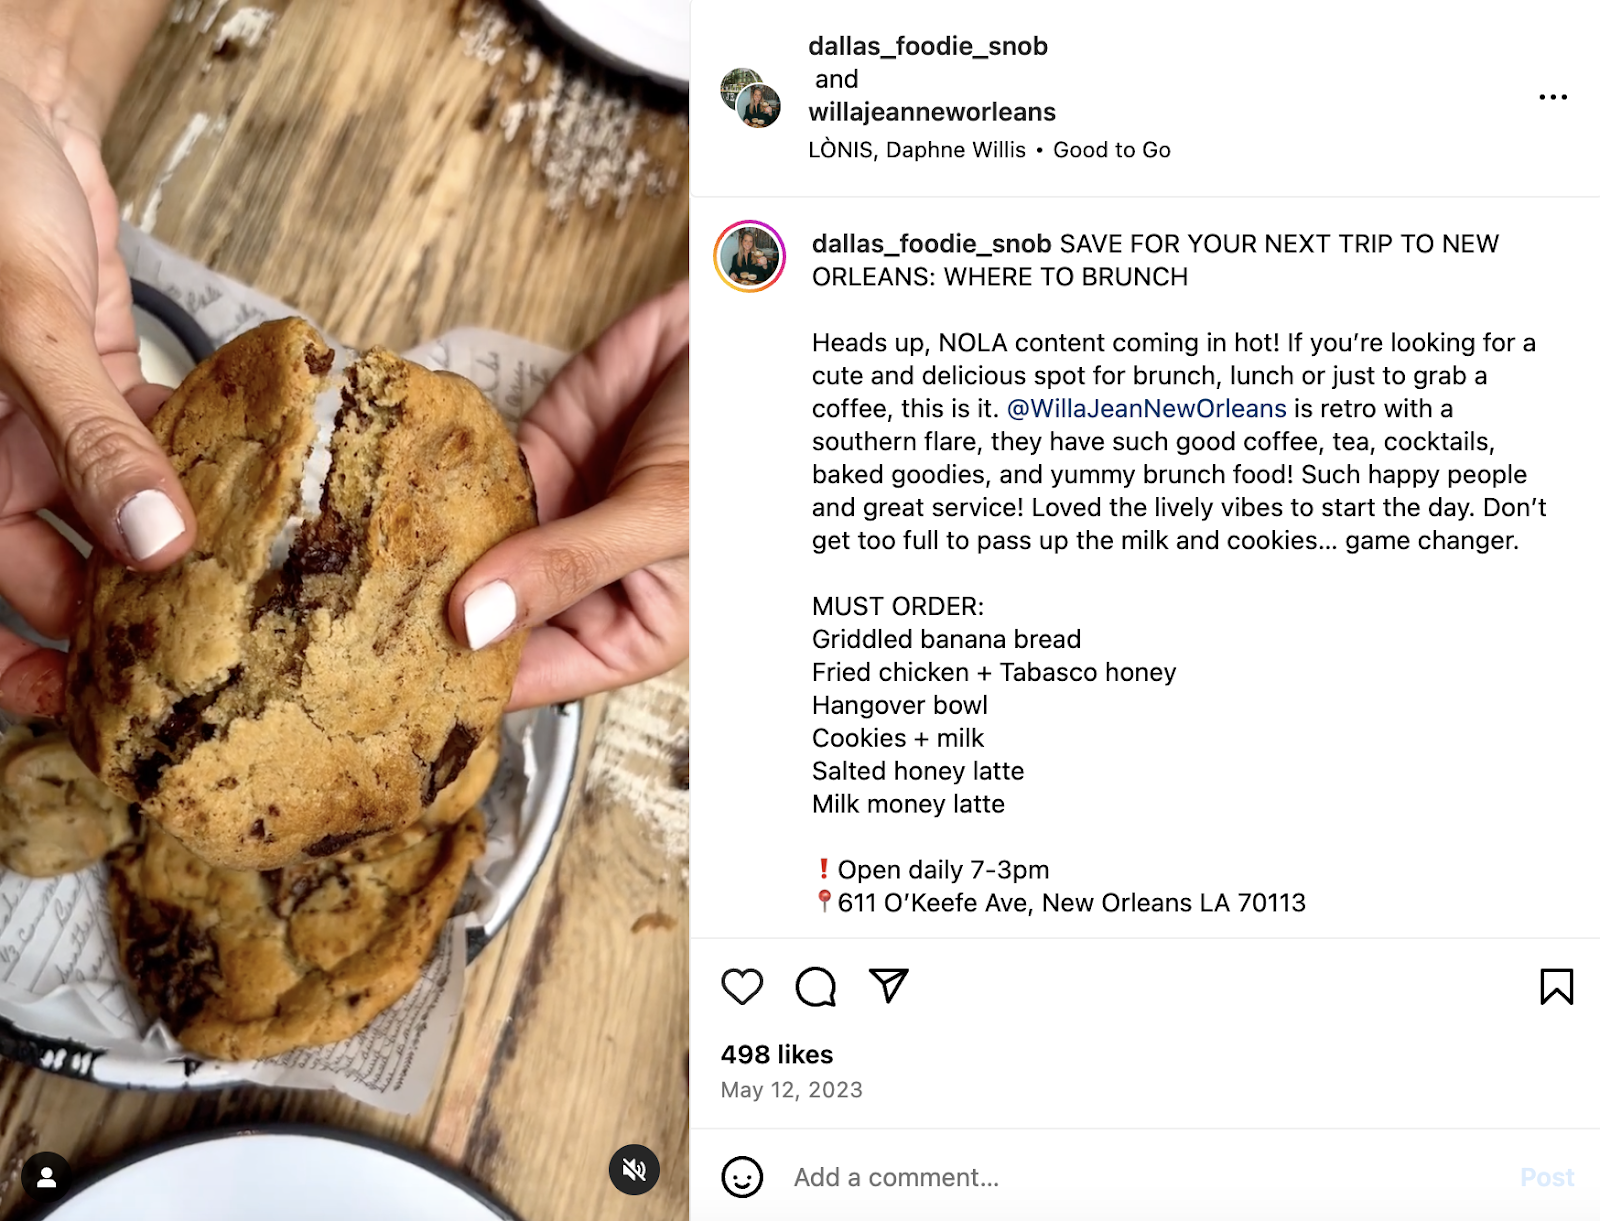 창의적인 레스토랑 마케팅 아이디어: 뉴올리언스 레스토랑인 Willa Jean이 Instagram 페이지에 다시 공유한 인플루언서 게시물입니다.